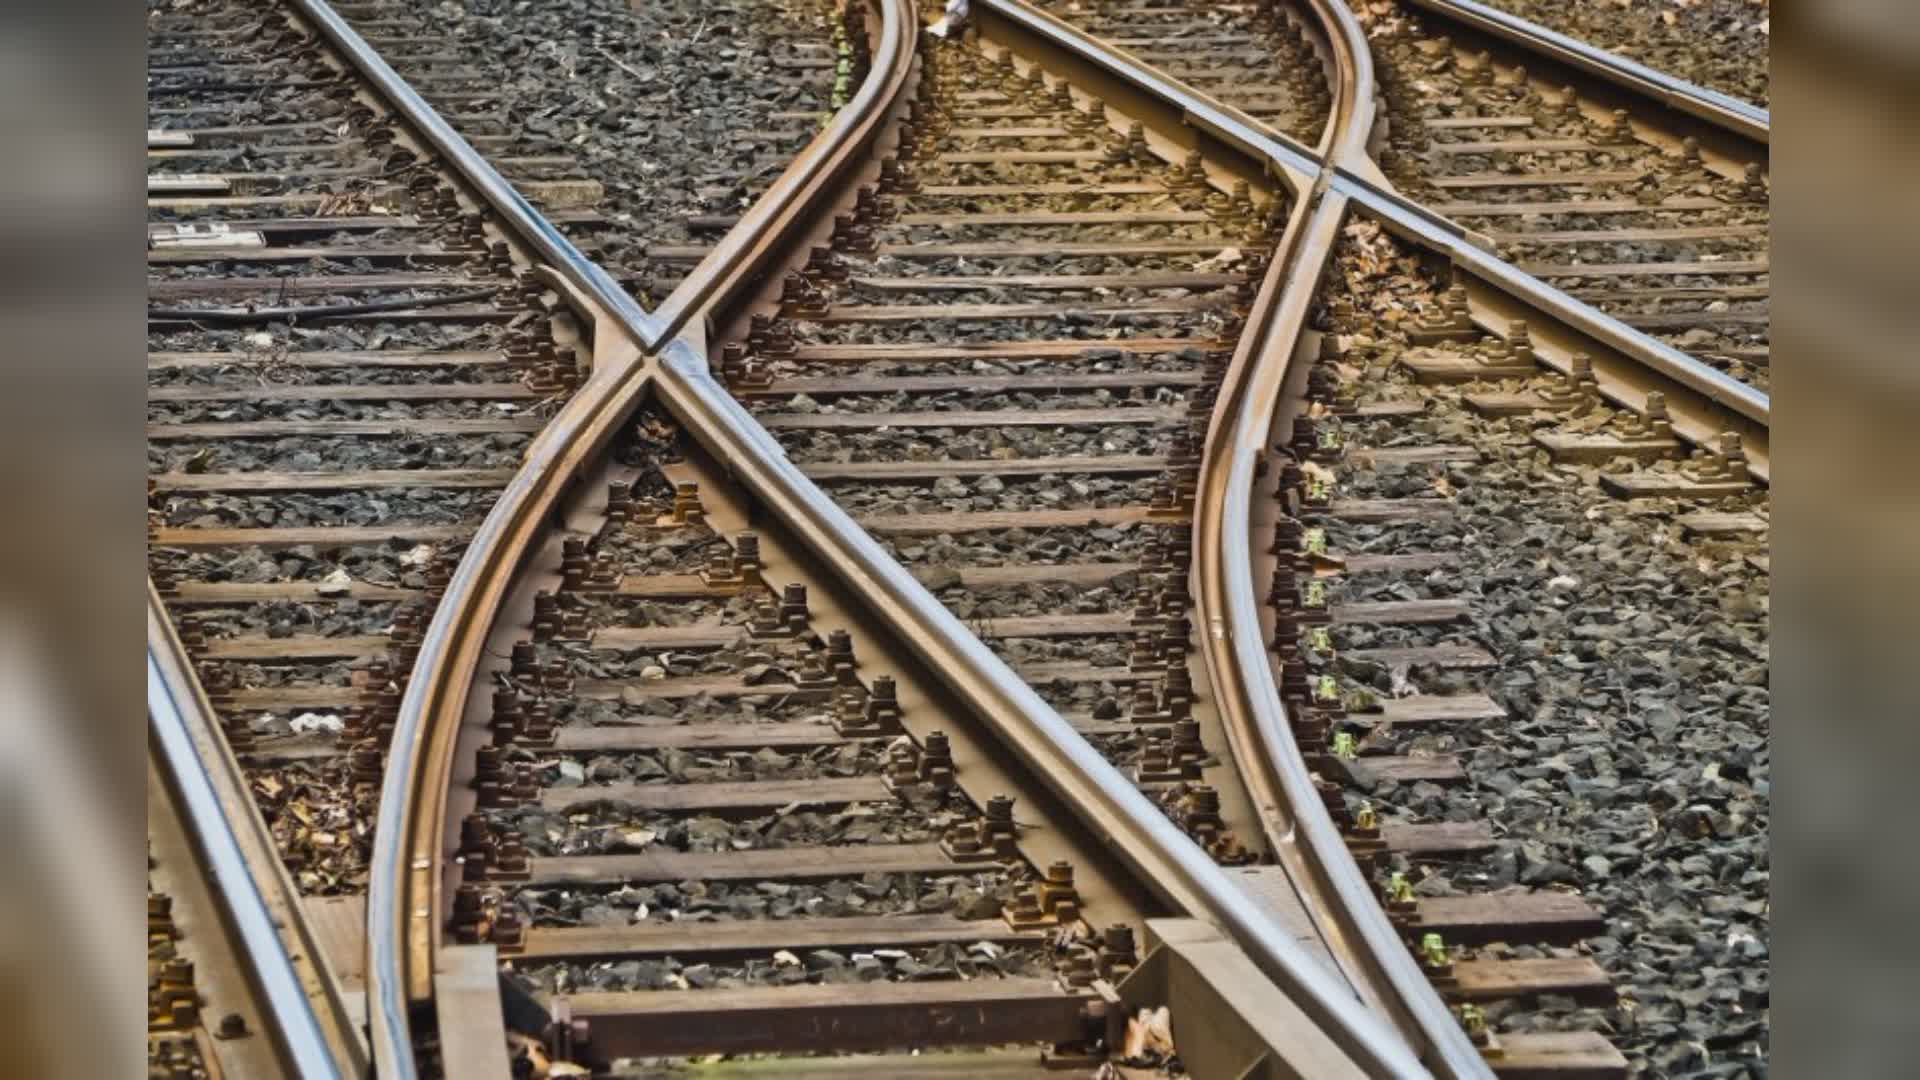 Trasporto merci ferroviario, Uiltrasporti: "Urgenti misure e interventi strutturali del Governo per garantire tenuta settore"